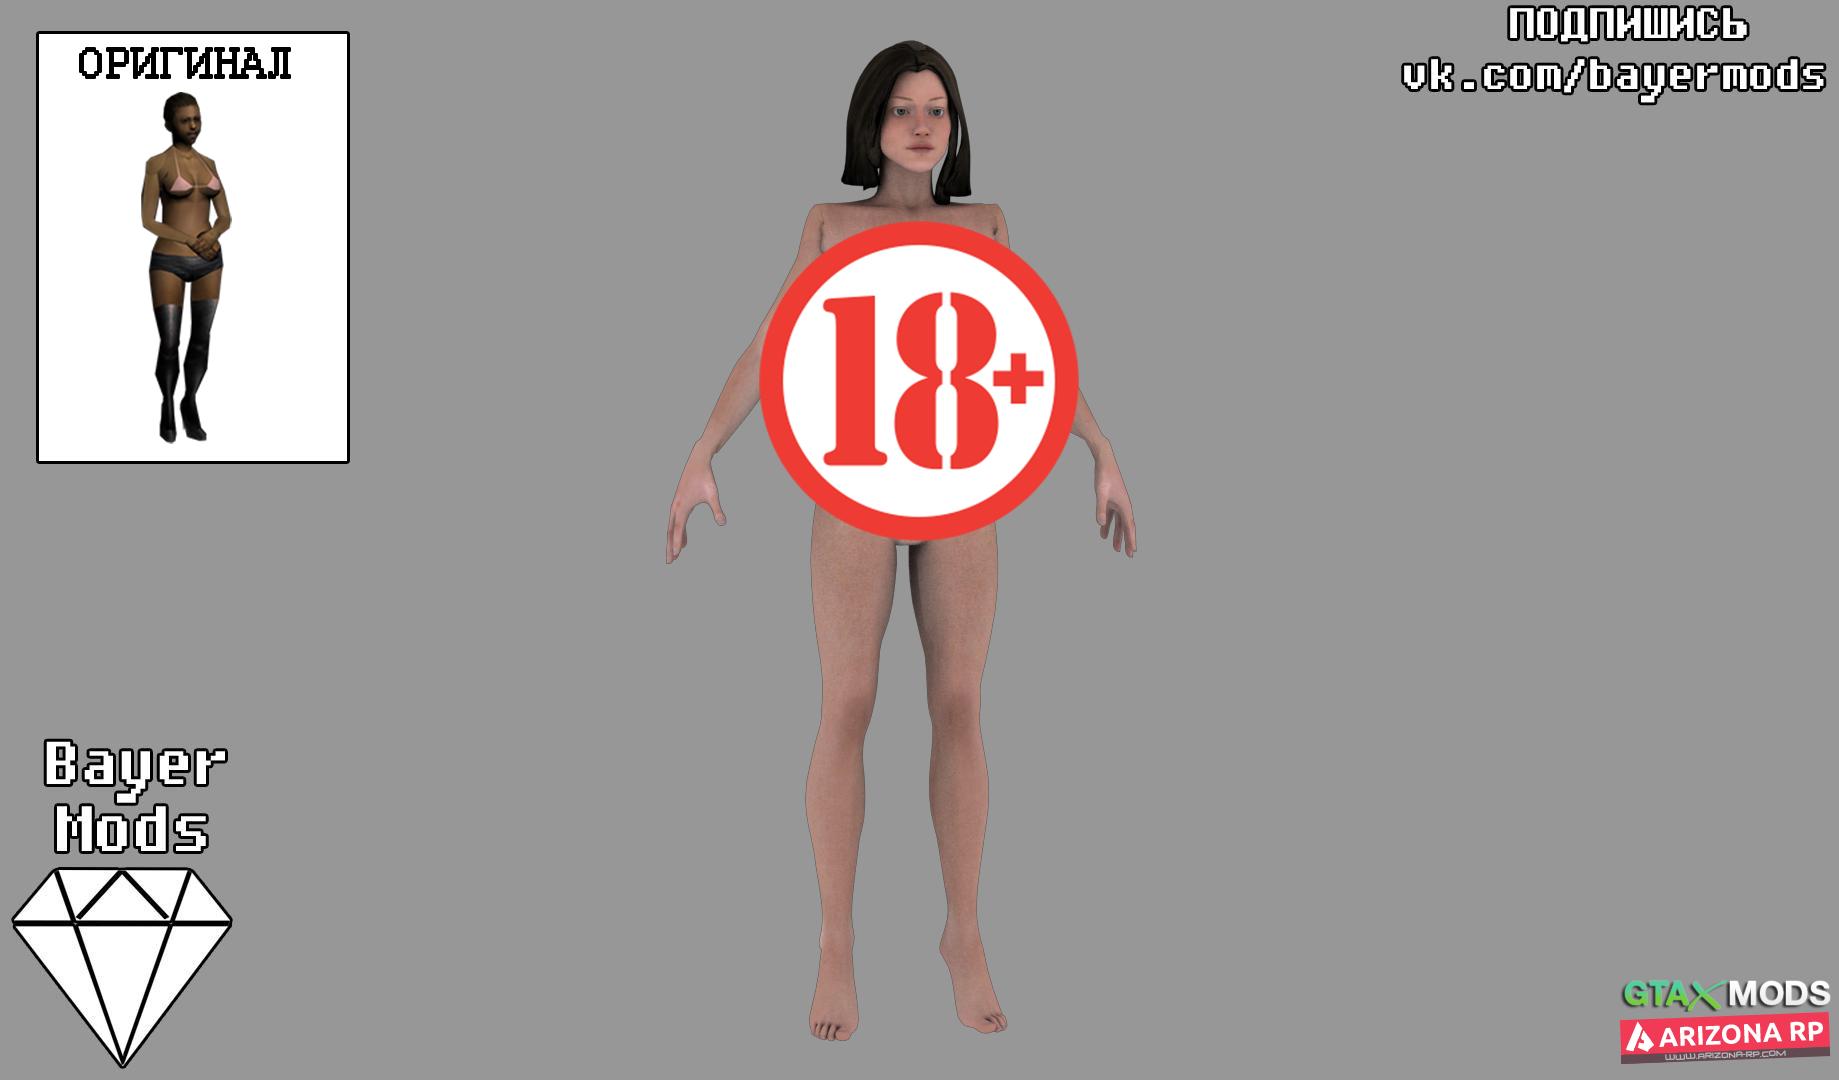 HQ] Полностью голая девушка - Скины, Латино, Девушки, Персоны » GTAXMODS -  Моды и файлы для GTA 5, GTA SAMP